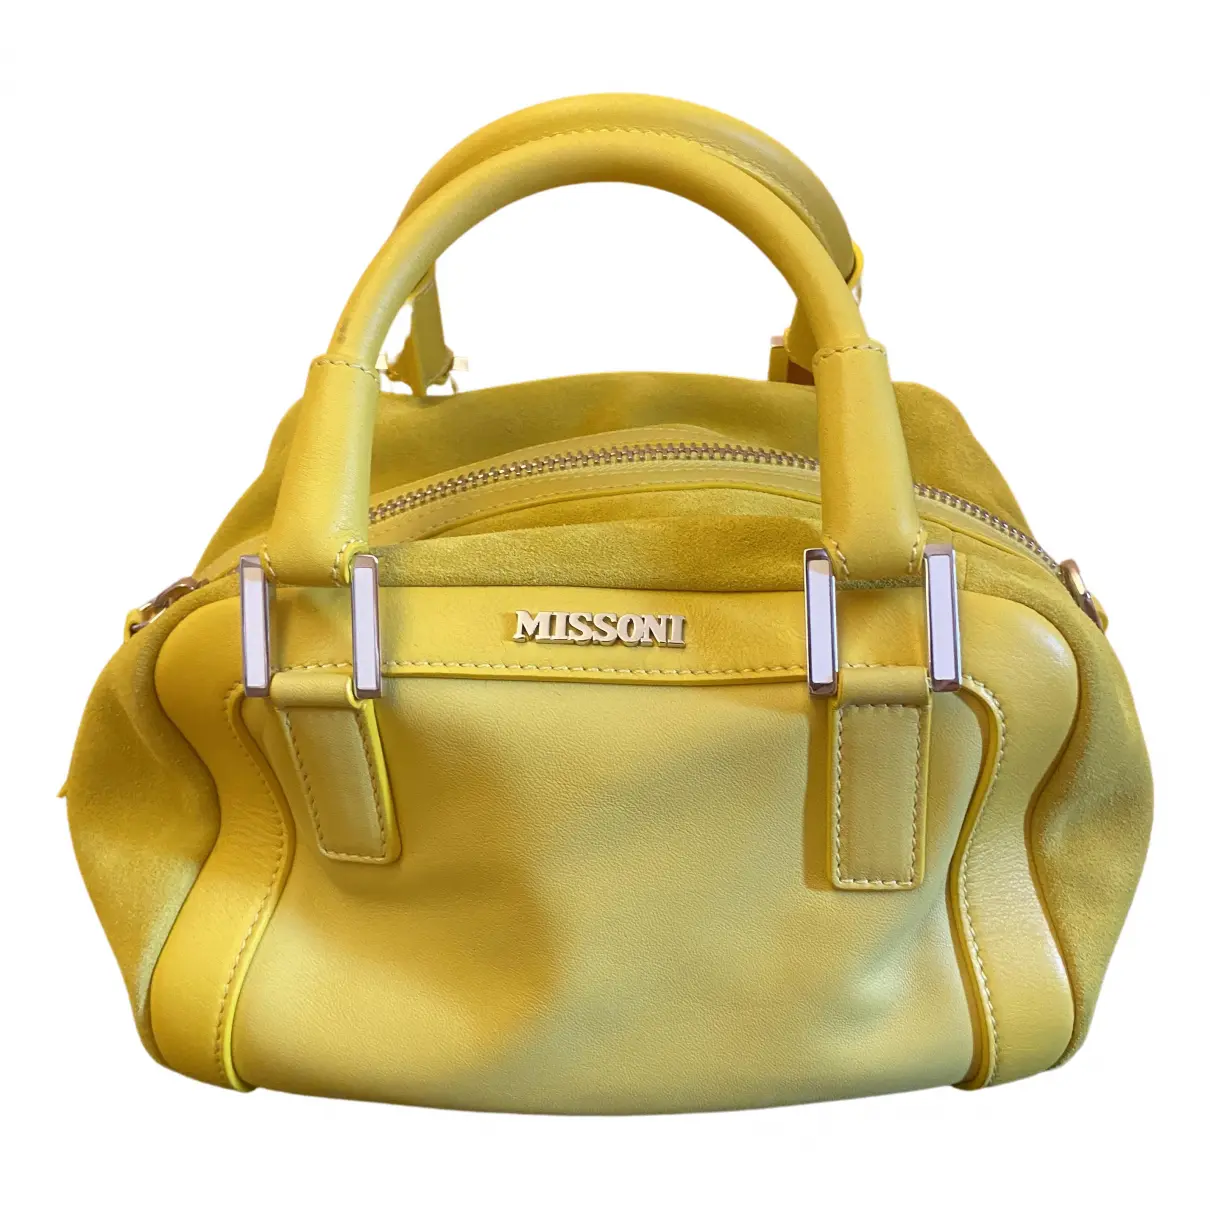 Leather handbag Missoni